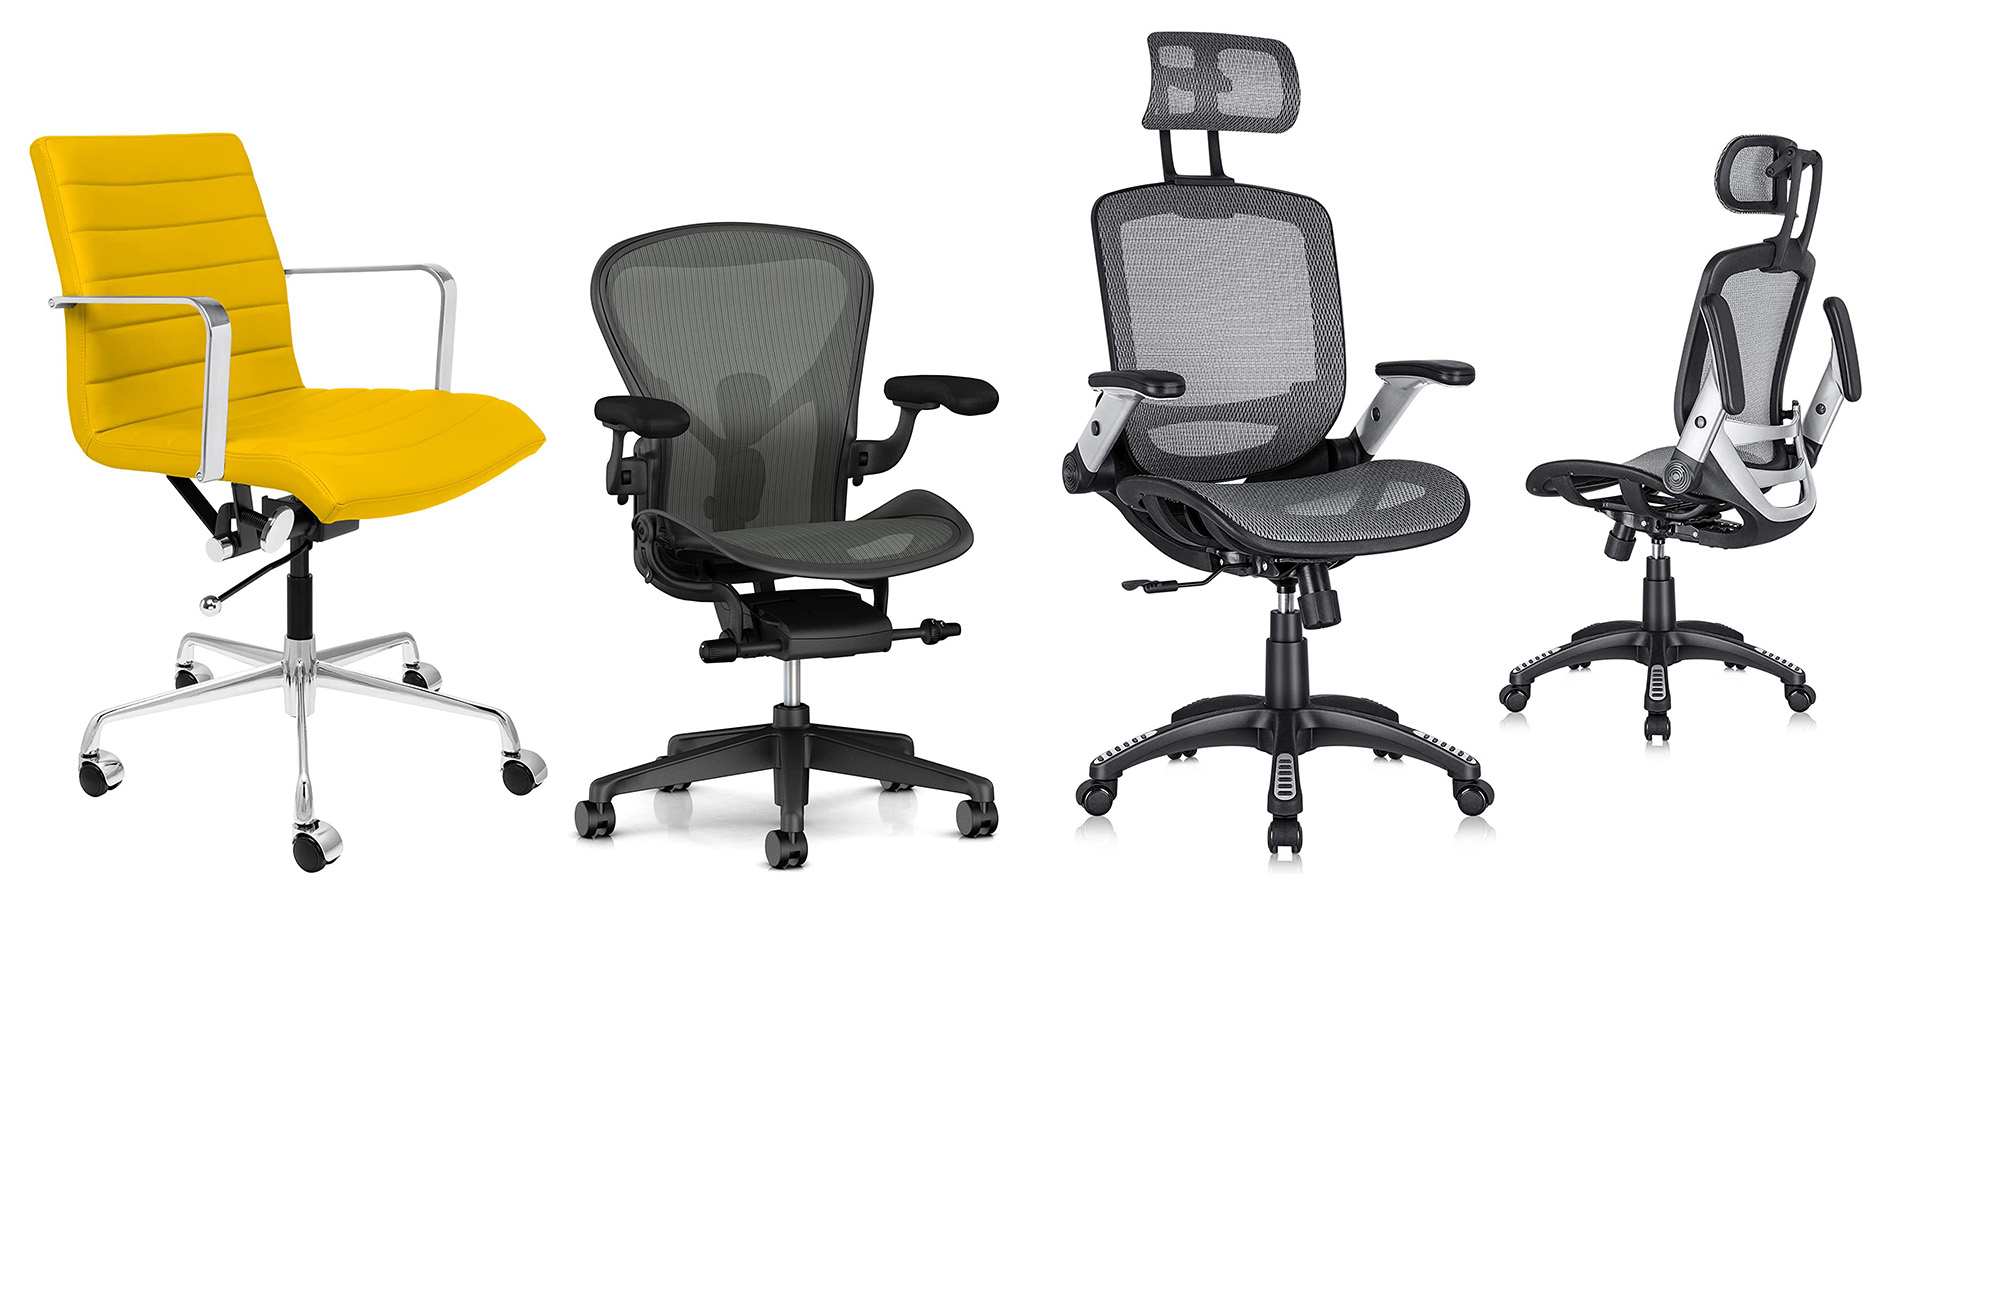 https://www.popsci.com/uploads/2021/10/25/best-office-chairs.jpg?auto=webp